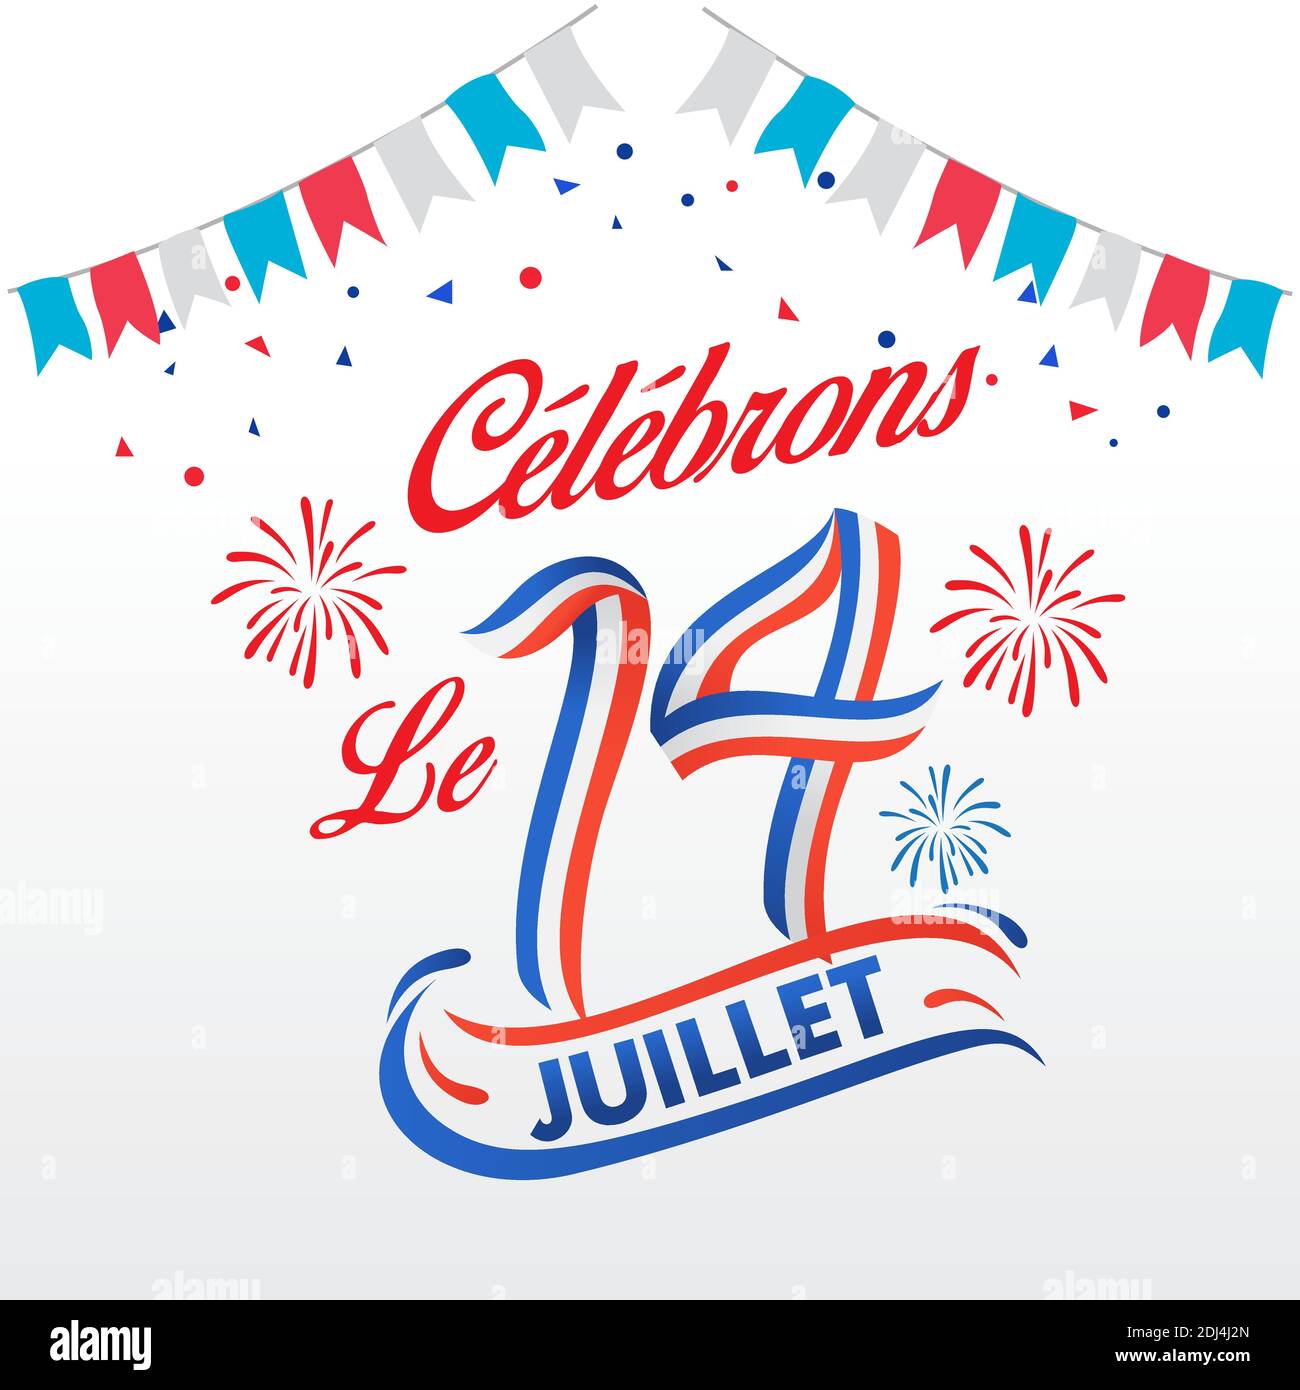 Bastilische Tag Feier Logotyp gebildet von blauen, weißen, roten Band. Le 14 Juillet Französische Übersetzung vom 14. Juli Französischer Nationalfeiertag Stock Vektor